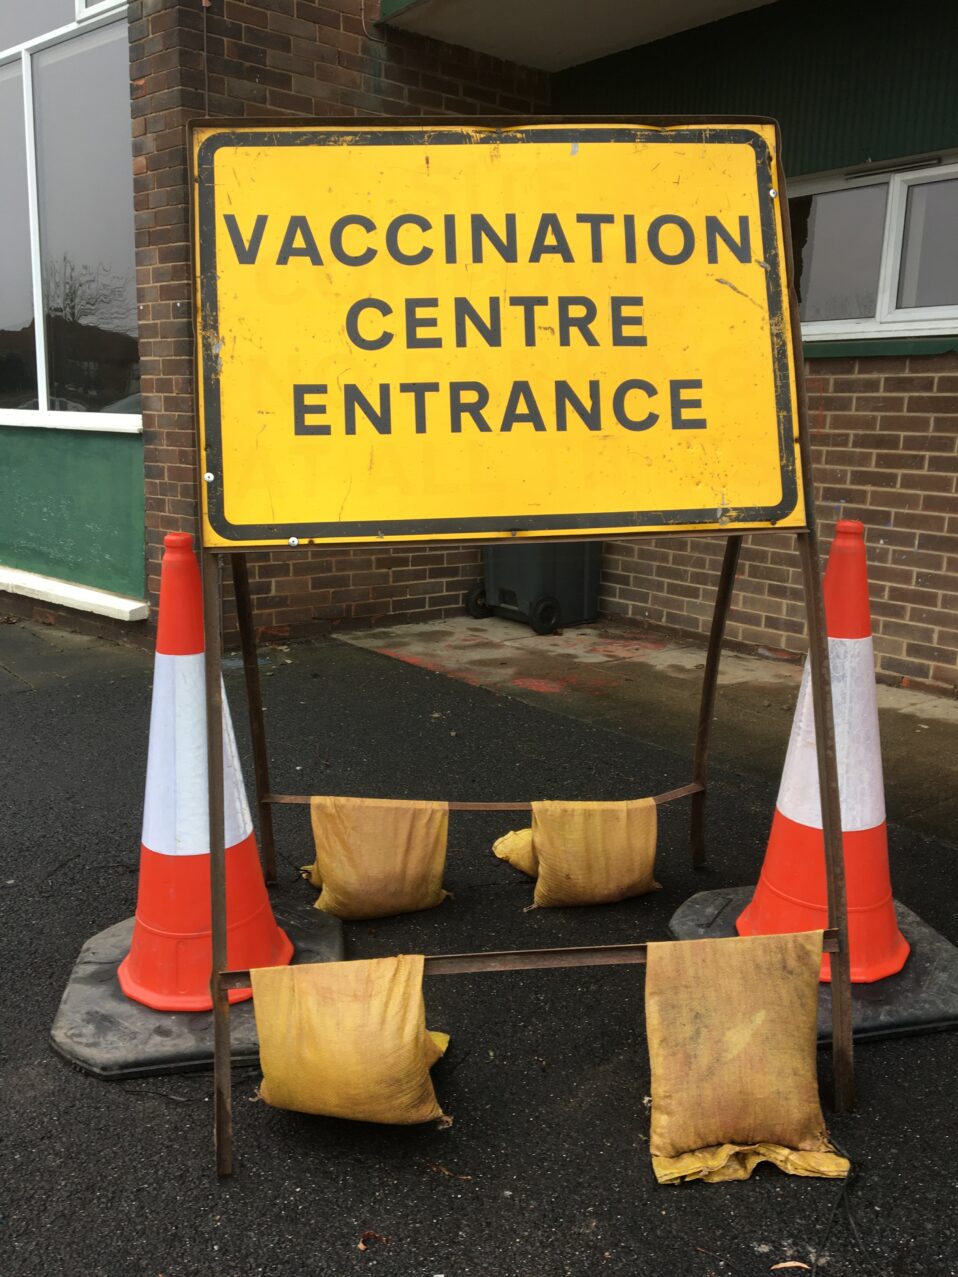 Vaccination entrance